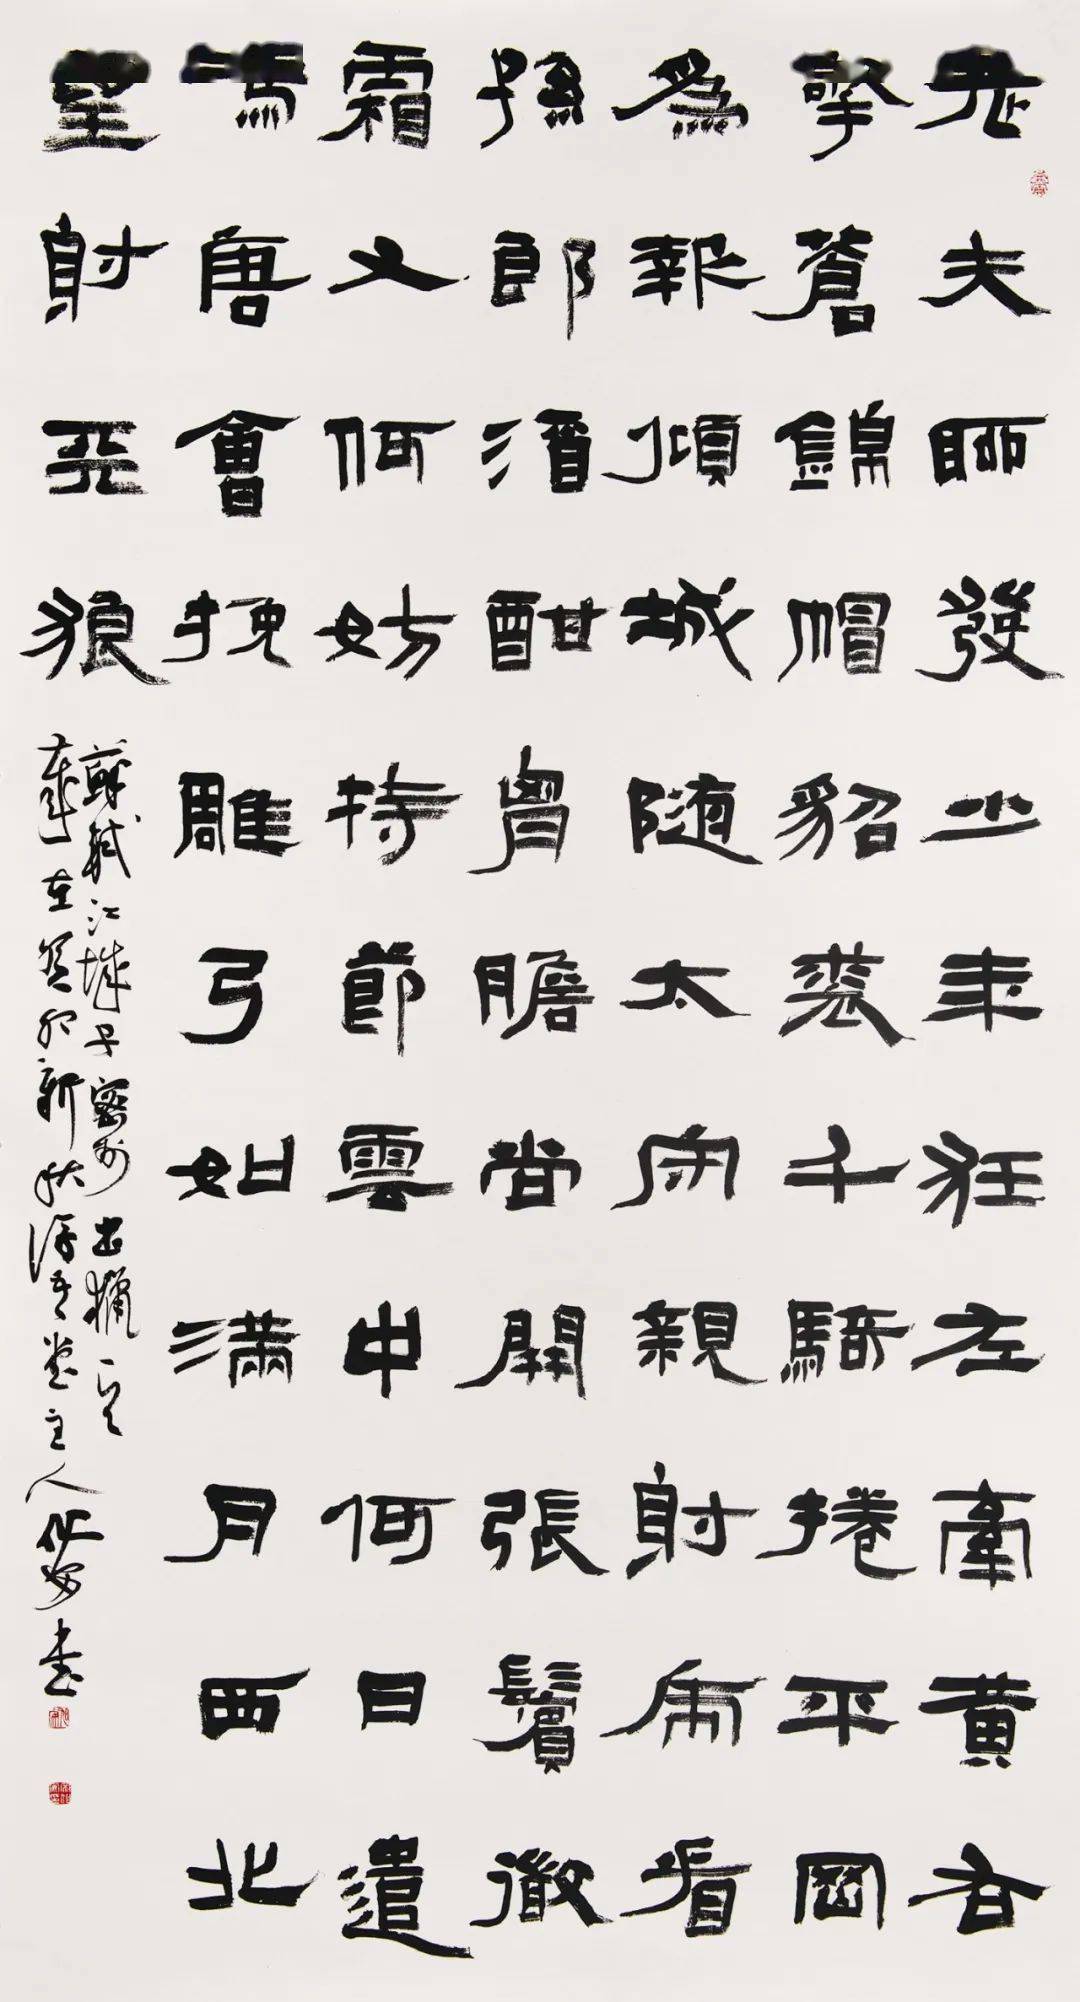 中国绿都 最氧三明古人题咏三明全国书法篆刻作品展览开幕